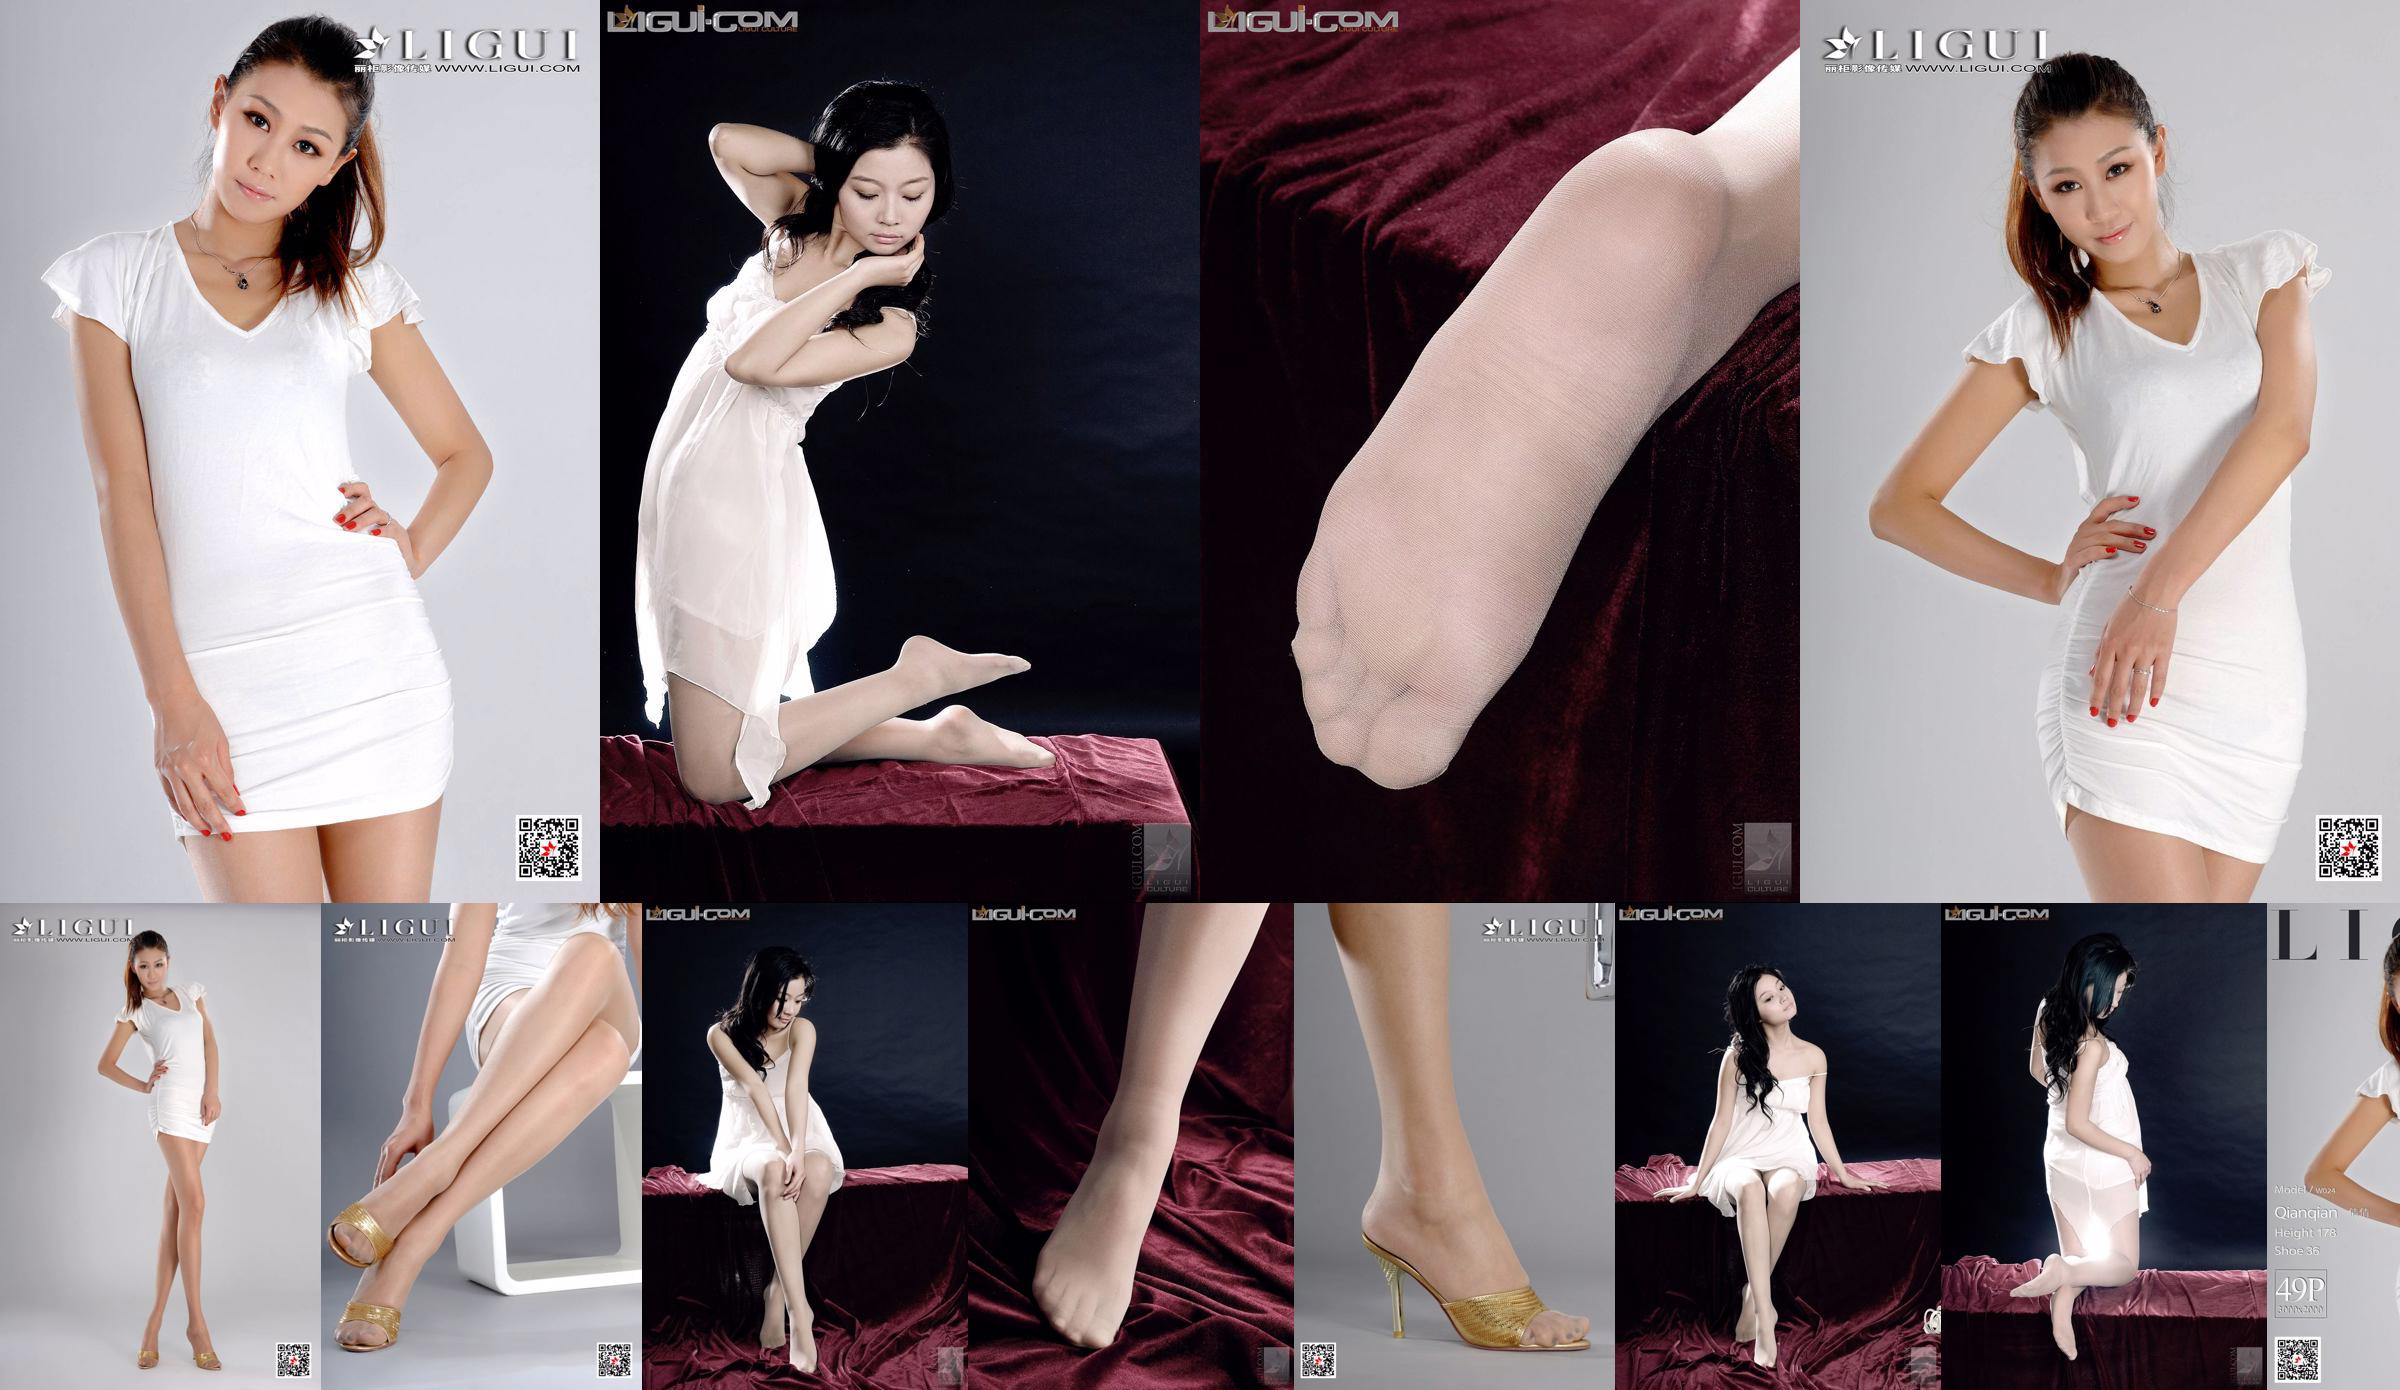 Người mẫu Qianqian "Cô gái cao với chân dài" [LIGUI] Người đẹp mạng No.84ef2f Trang 1